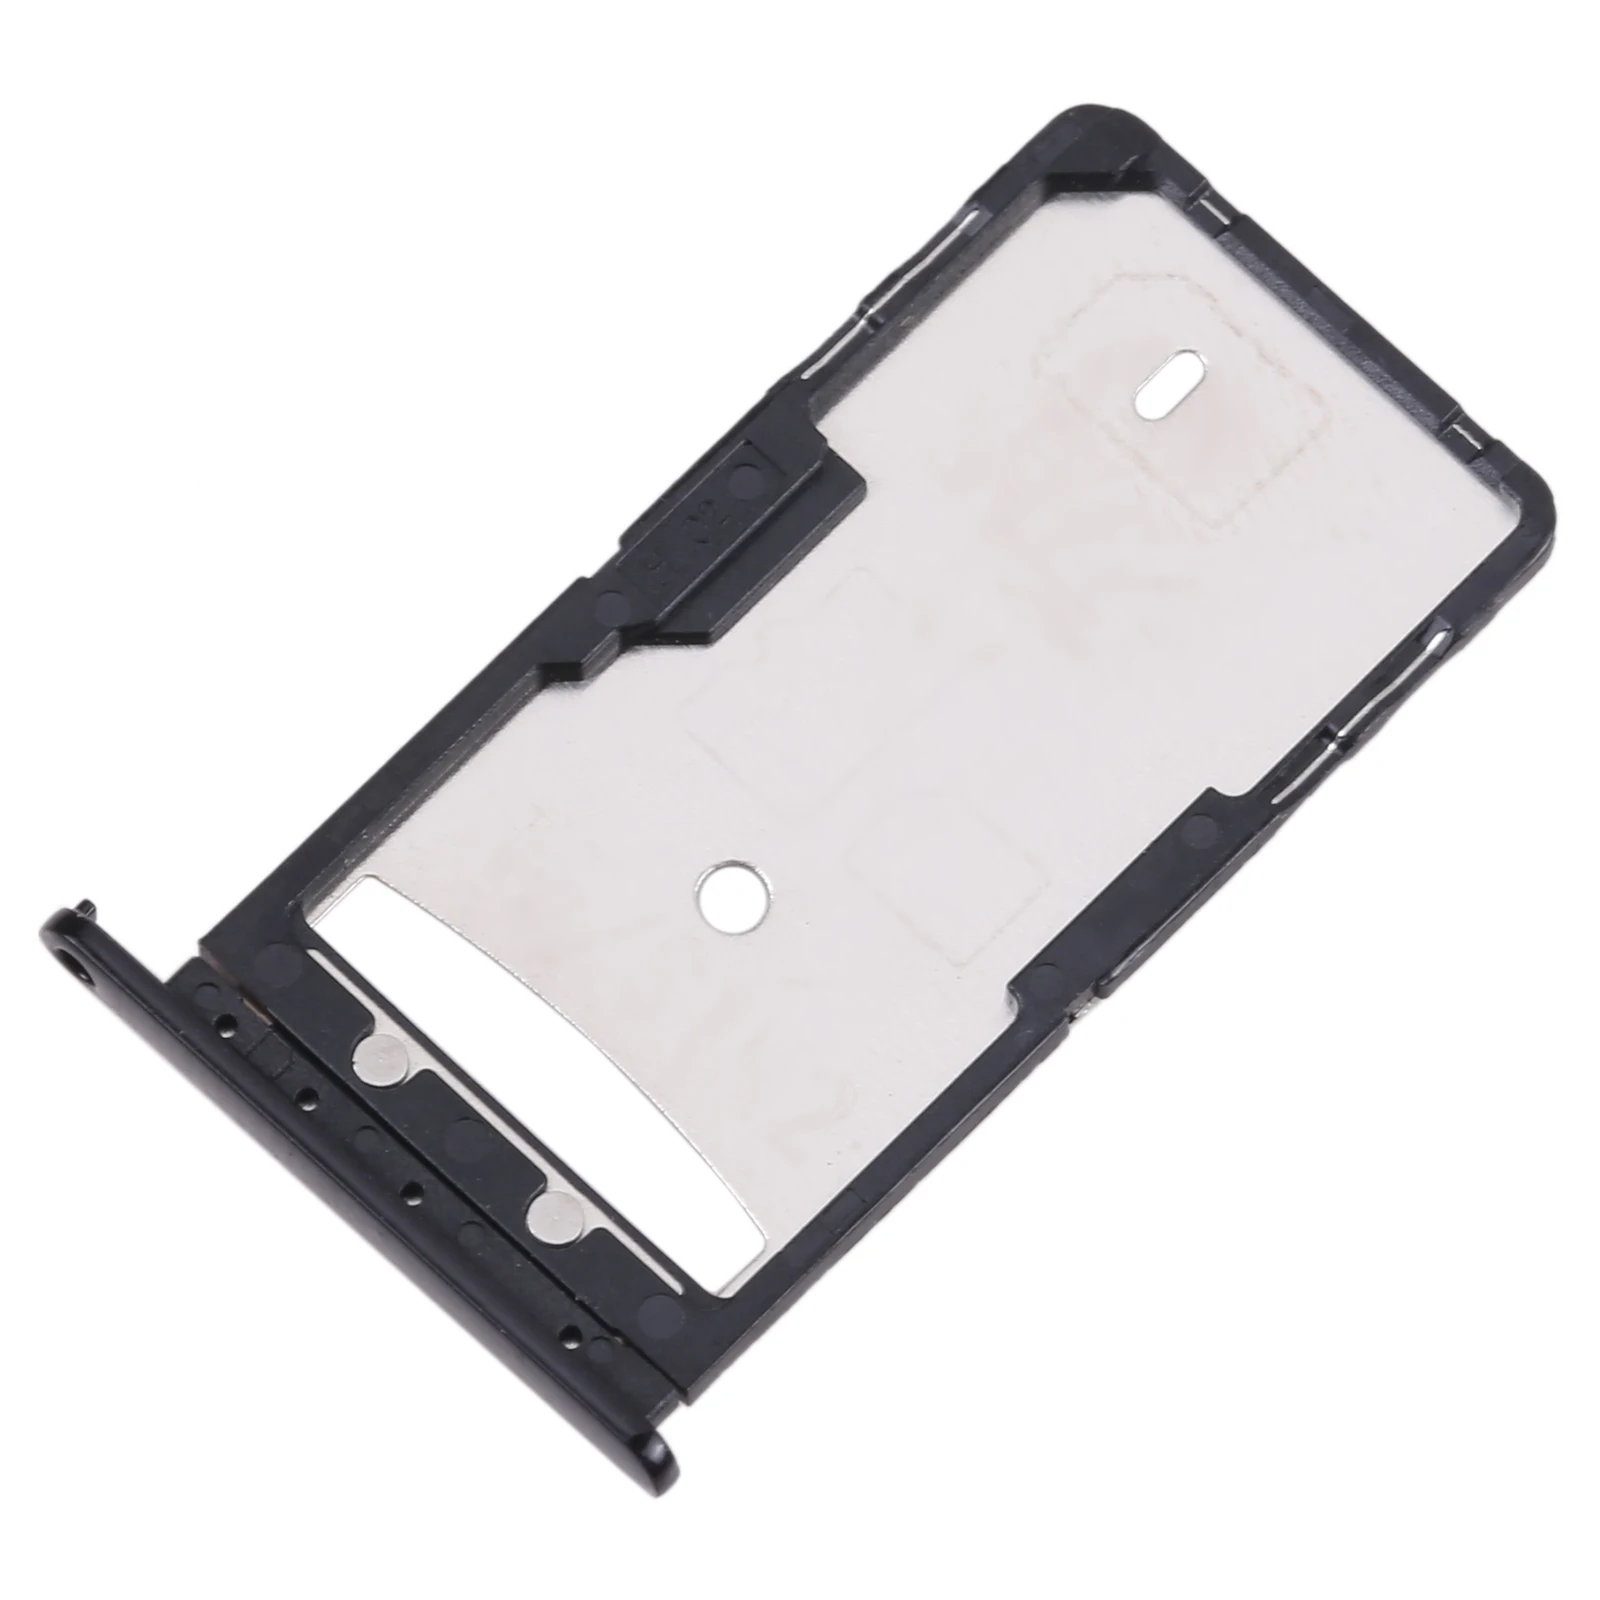 For Lenovo K10 Note / Z6 Youth L38111 SIM Card Tray Black